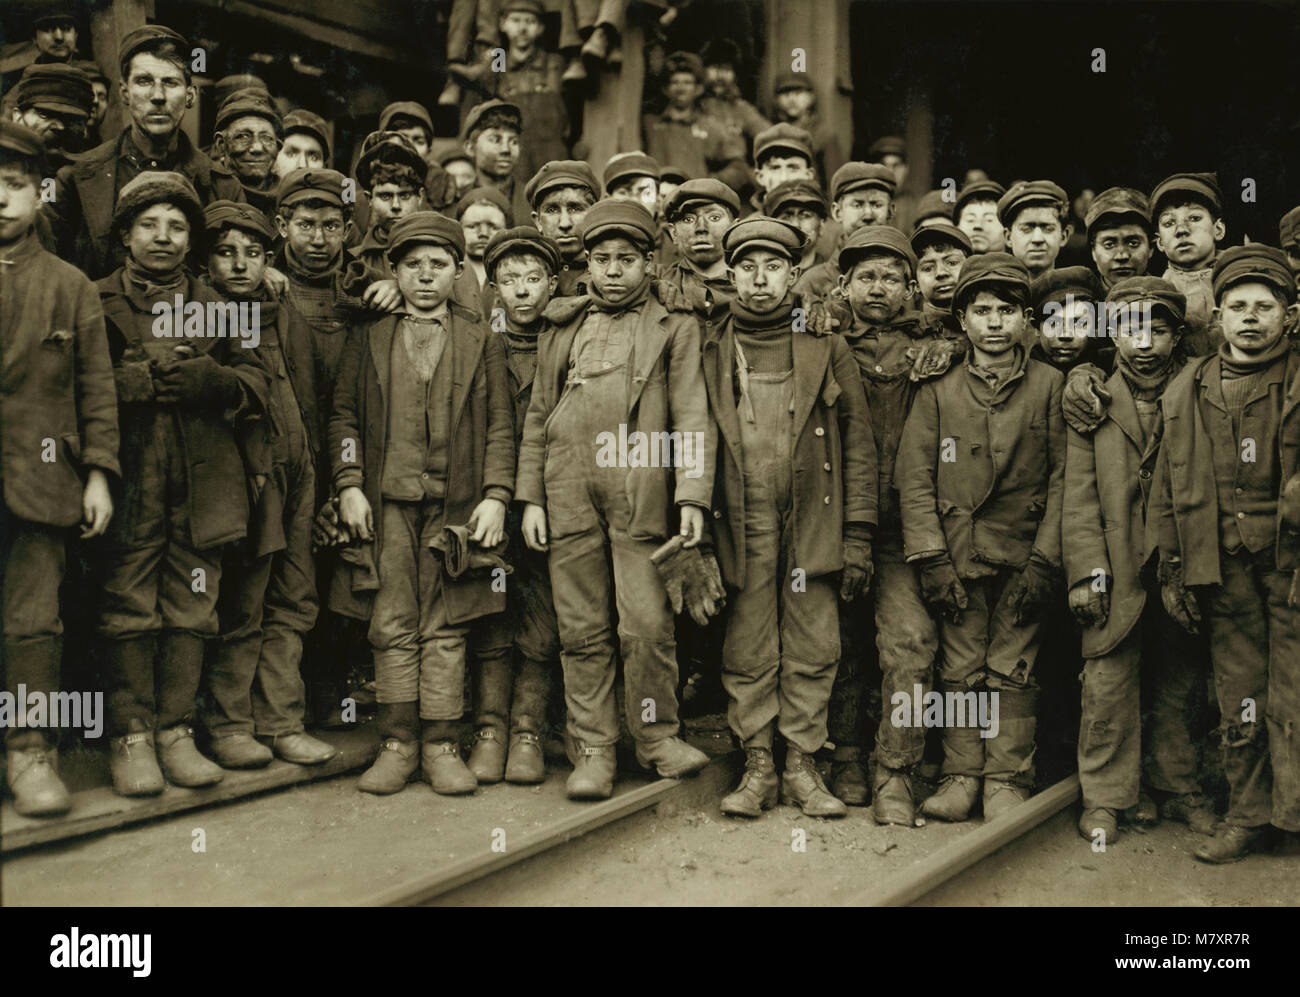 Grand groupe de garçons disjoncteur disjoncteur extérieur Ewen, Sud Pittston, Pennsylvania, USA, Lewis Hine pour Comité nationale sur le travail des enfants, Janvier 1911 Banque D'Images